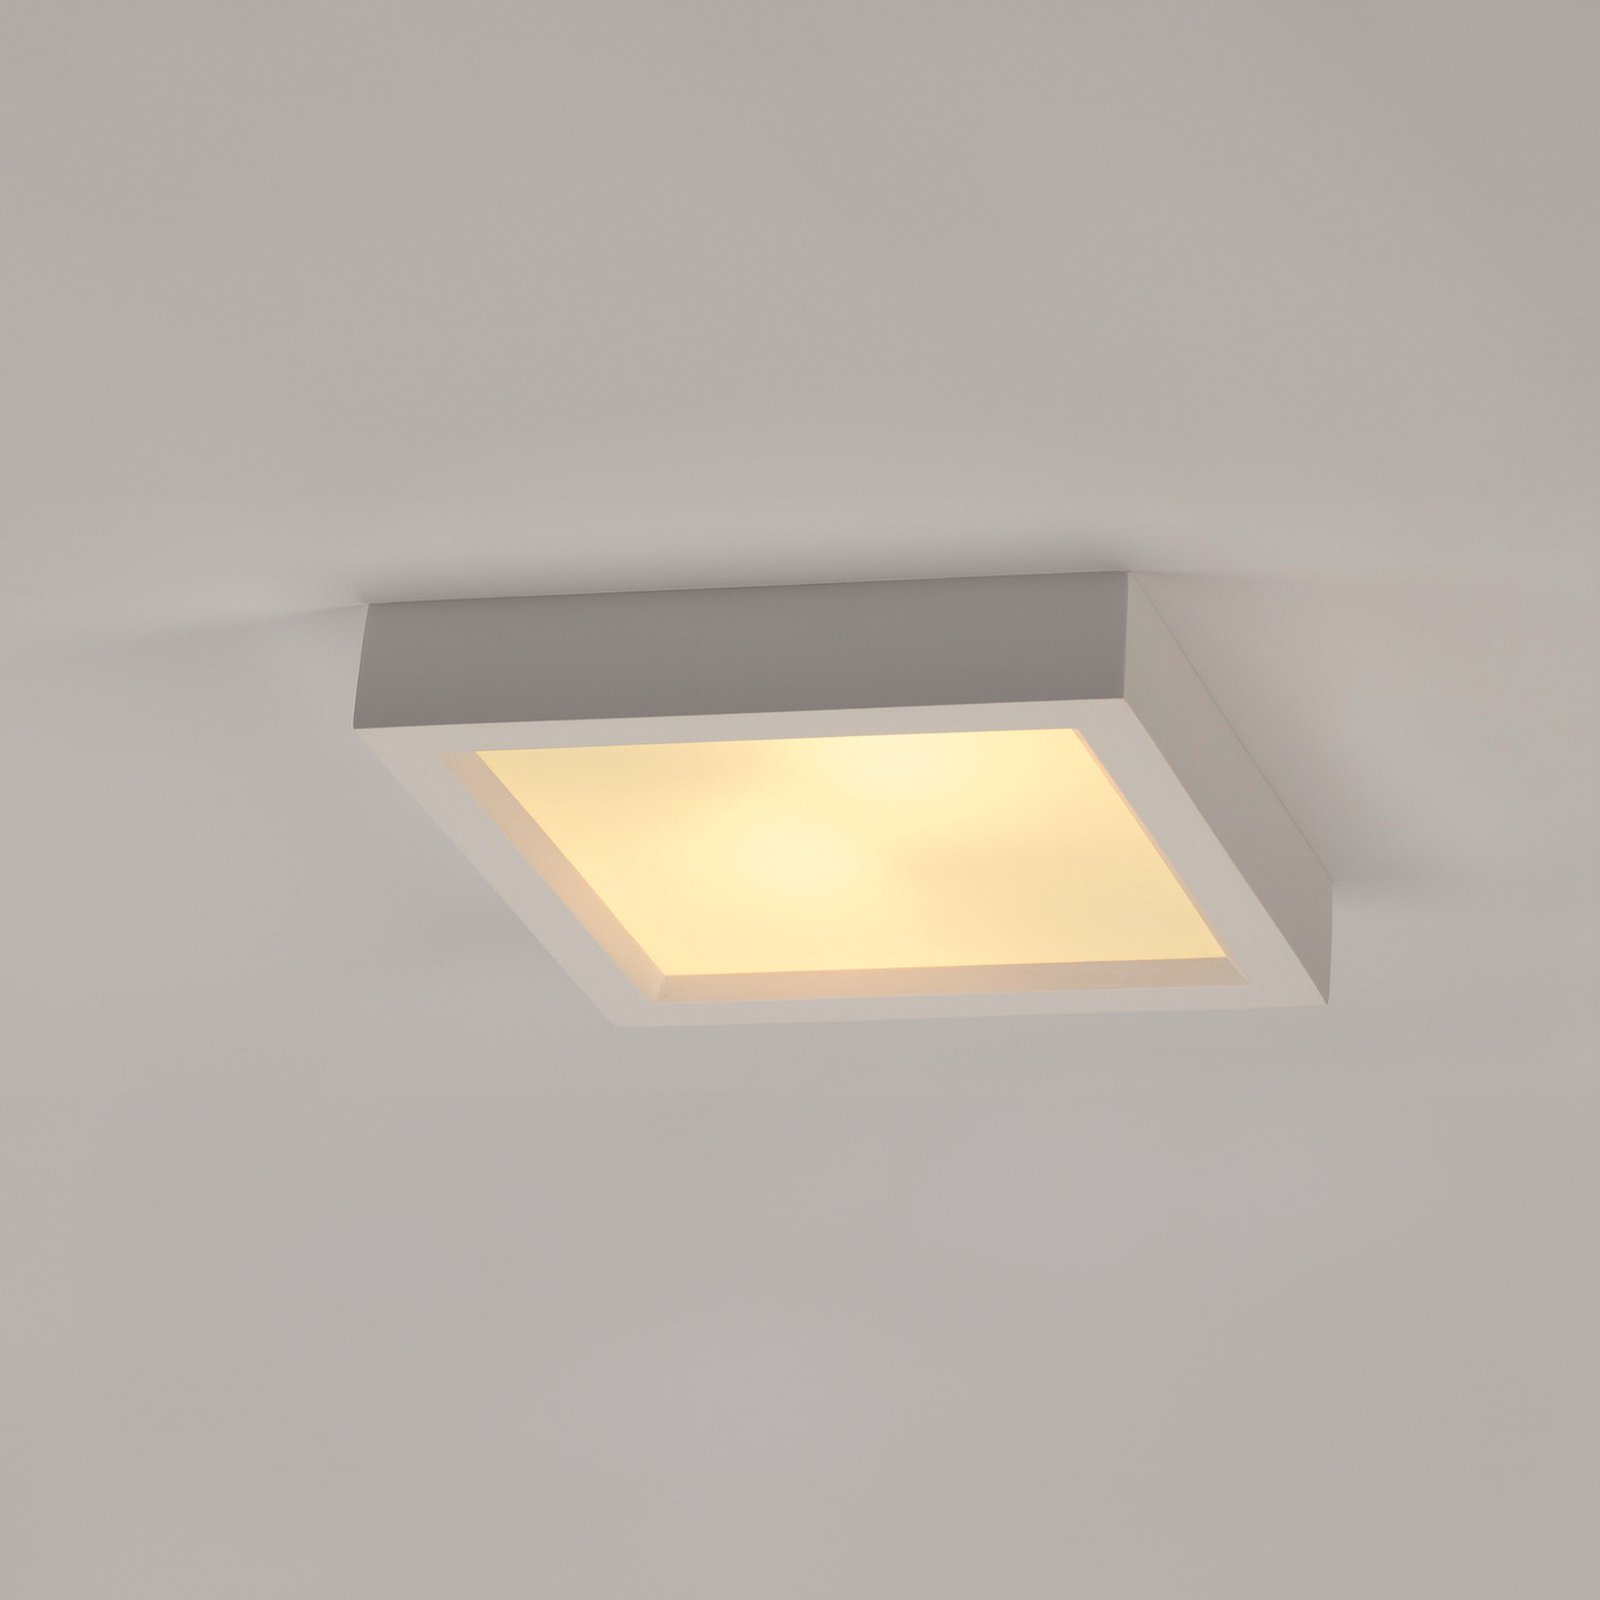 Lampa sufitowa SLV Plastra 104, biały, gips, szerokość 25 cm